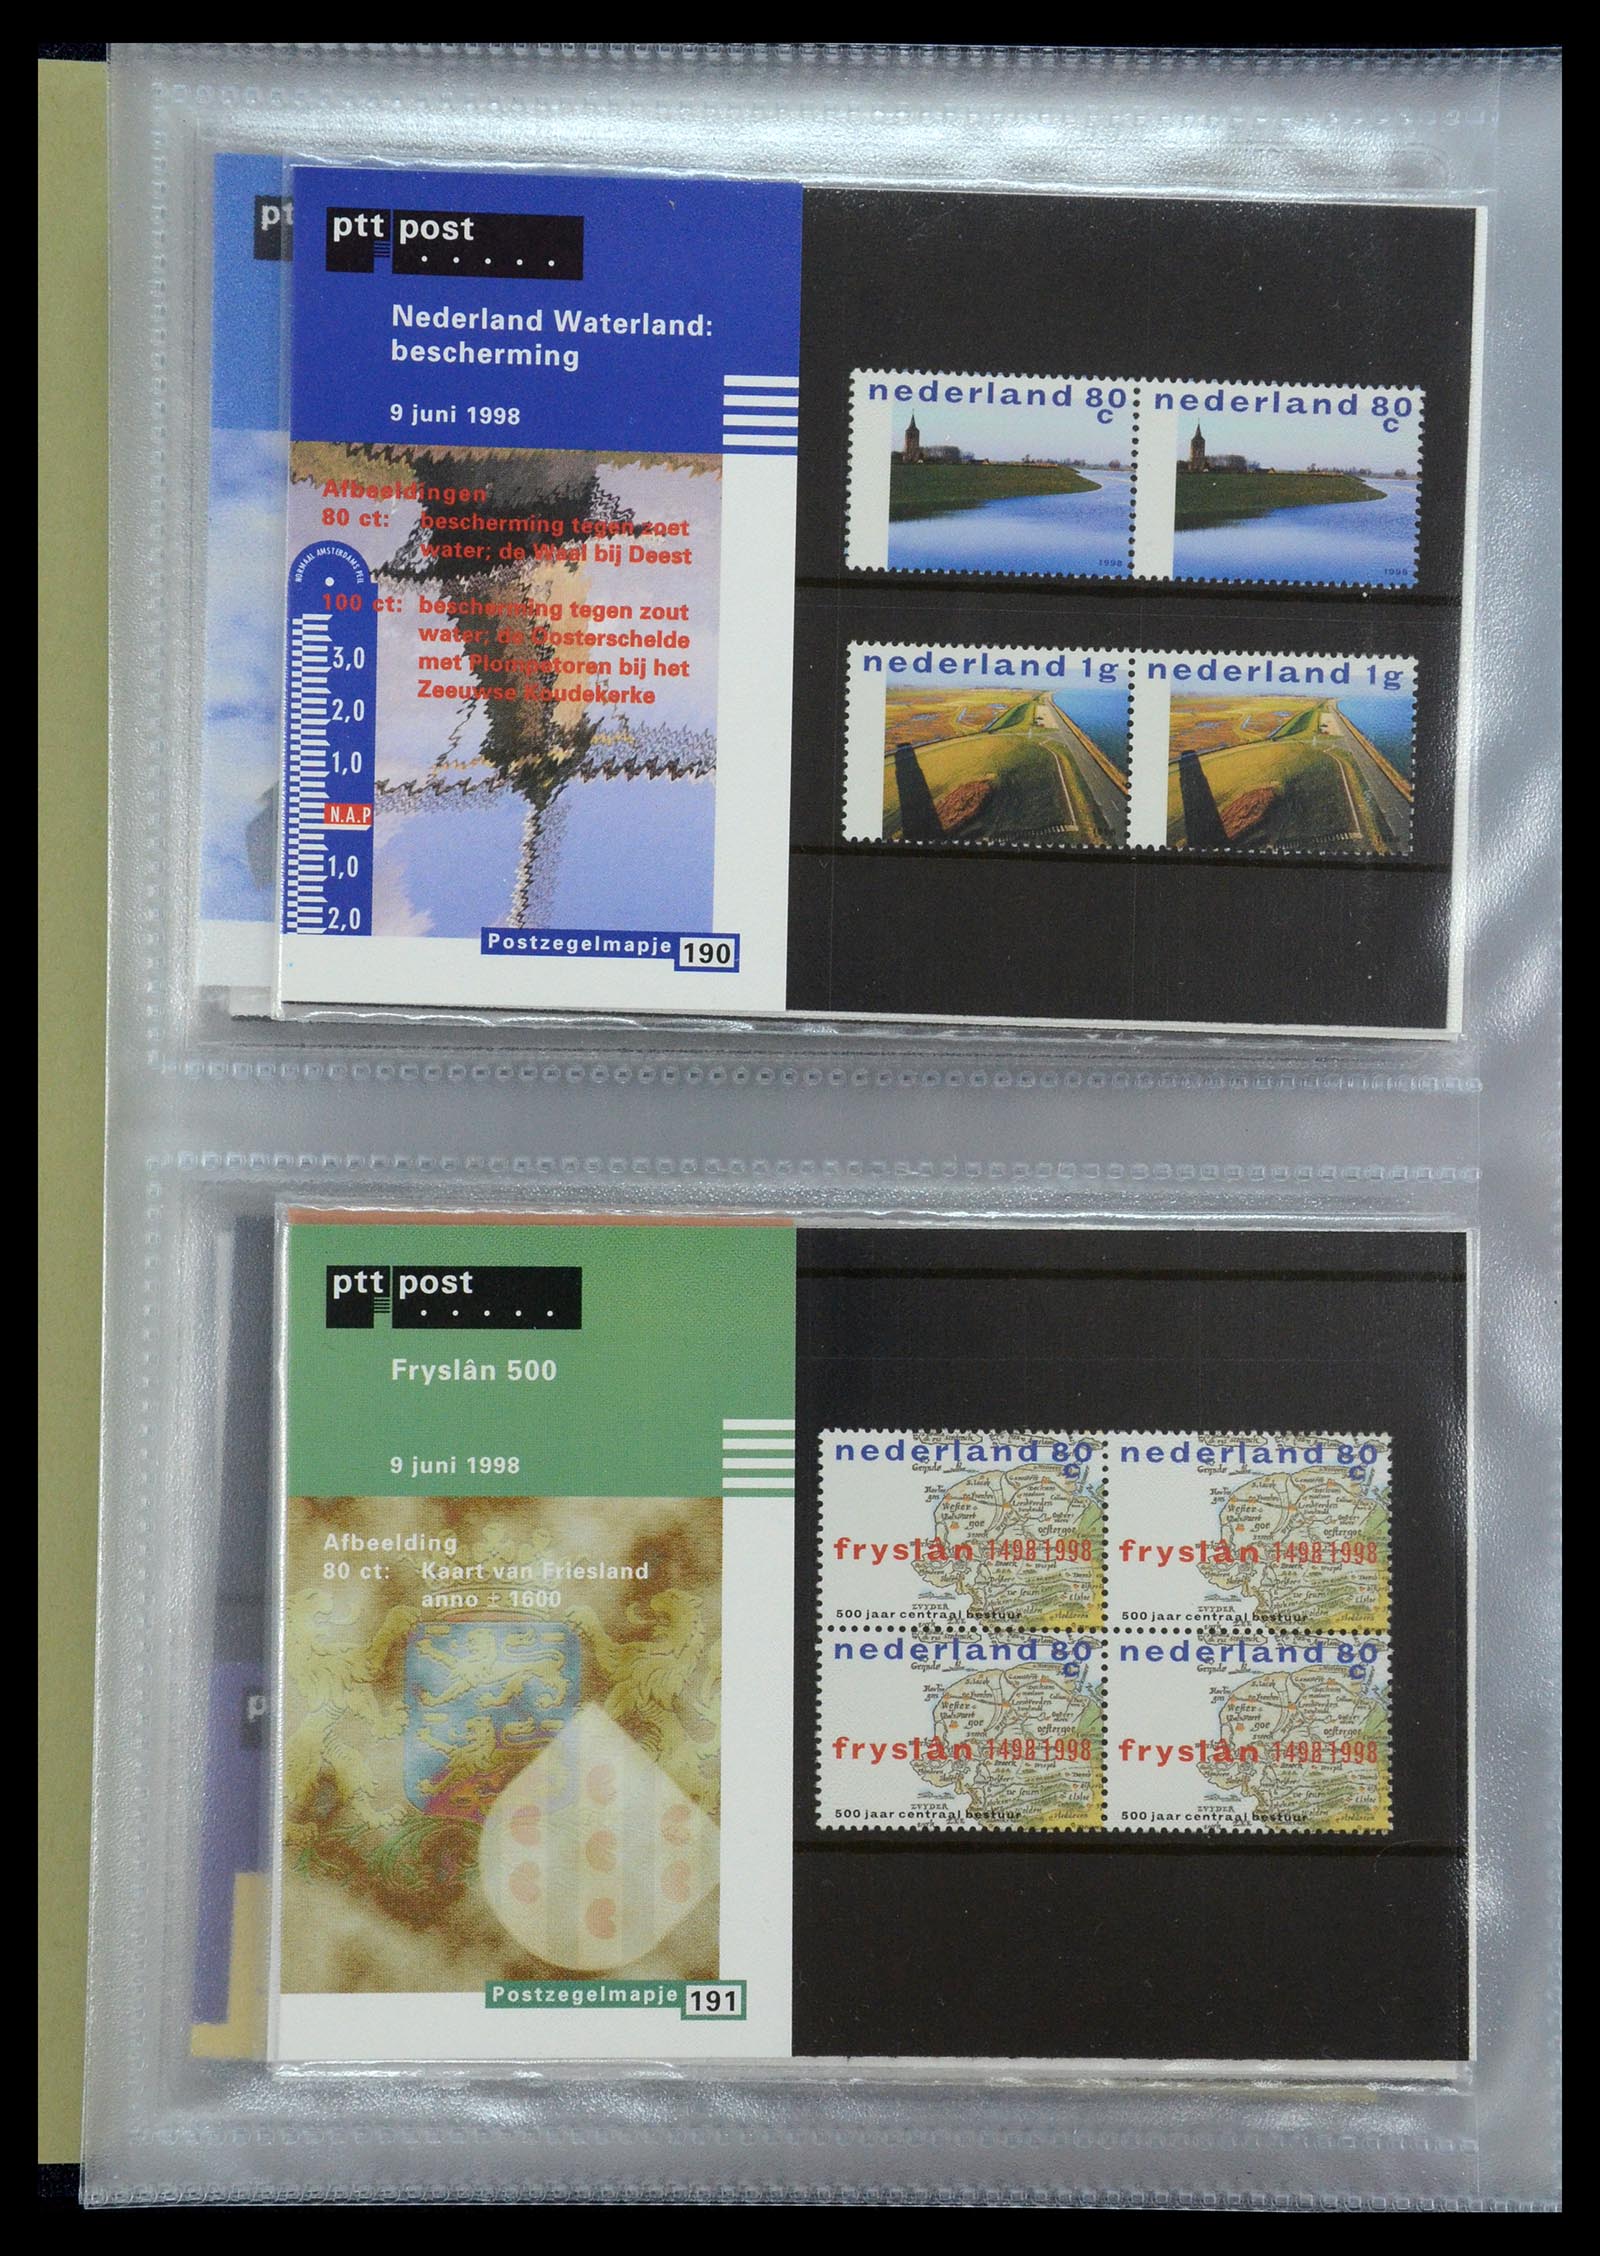 35144 098 - Stamp Collection 35144 Netherlands PTT presentation packs 1982-2021!